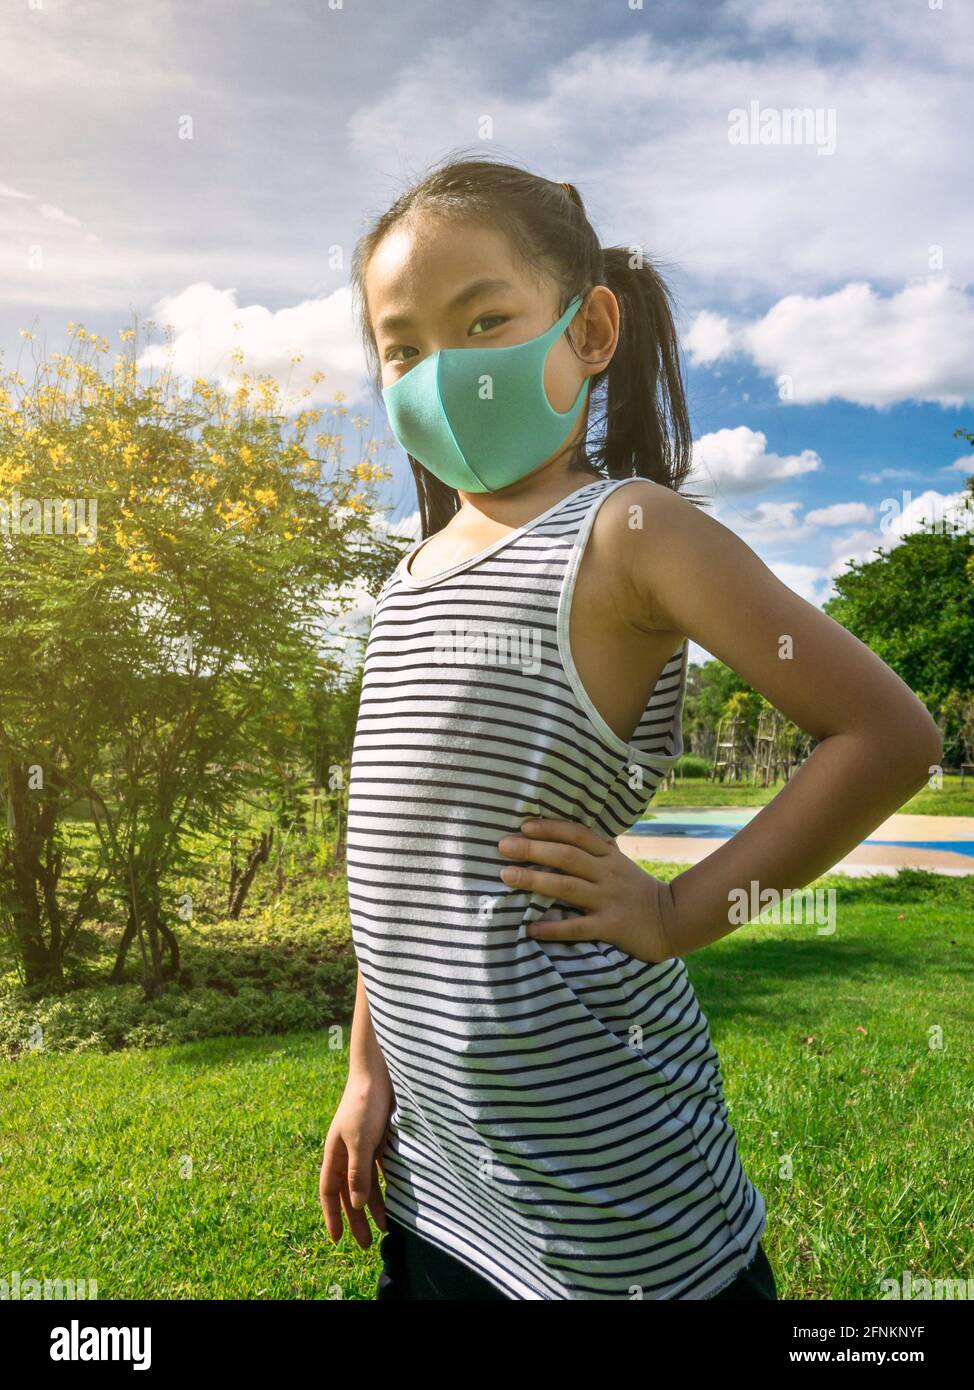 Portrait Asiatische kleine Mädchen posiert im Park mit Arm Akimbo, trägt Schutzmaske für Corona-Virus-Epidemie, Hintergrund blauen Himmel und Blumenbäume, ve Stockfoto